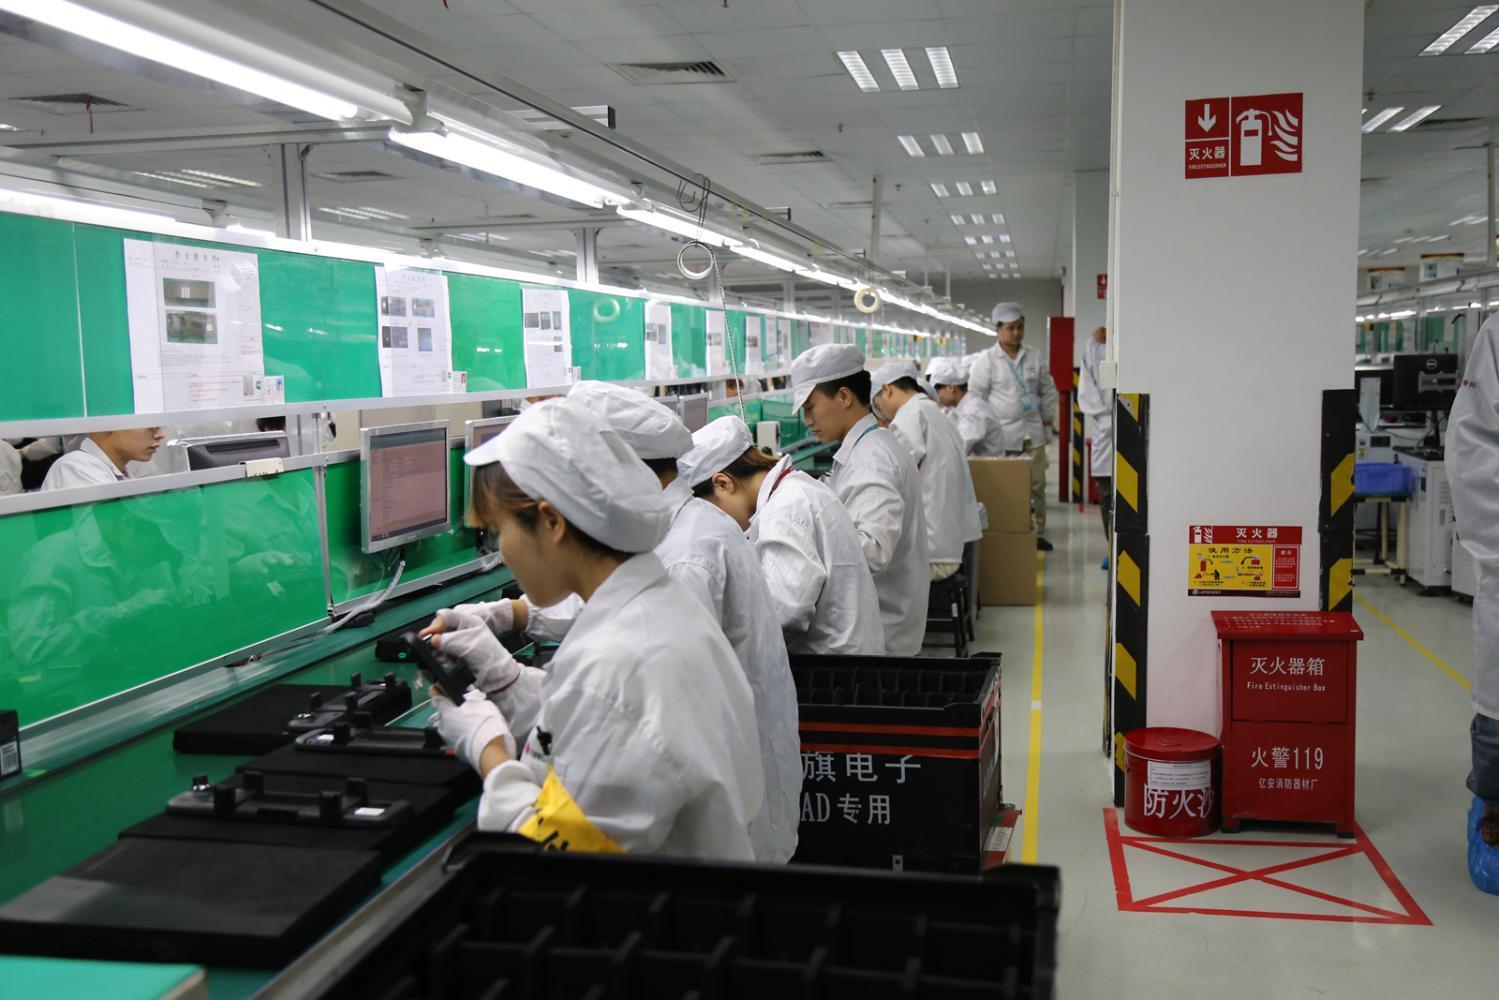 惠州本土的龙旗电子作为70迈的生产商,不容置疑的成为本次探秘的重中